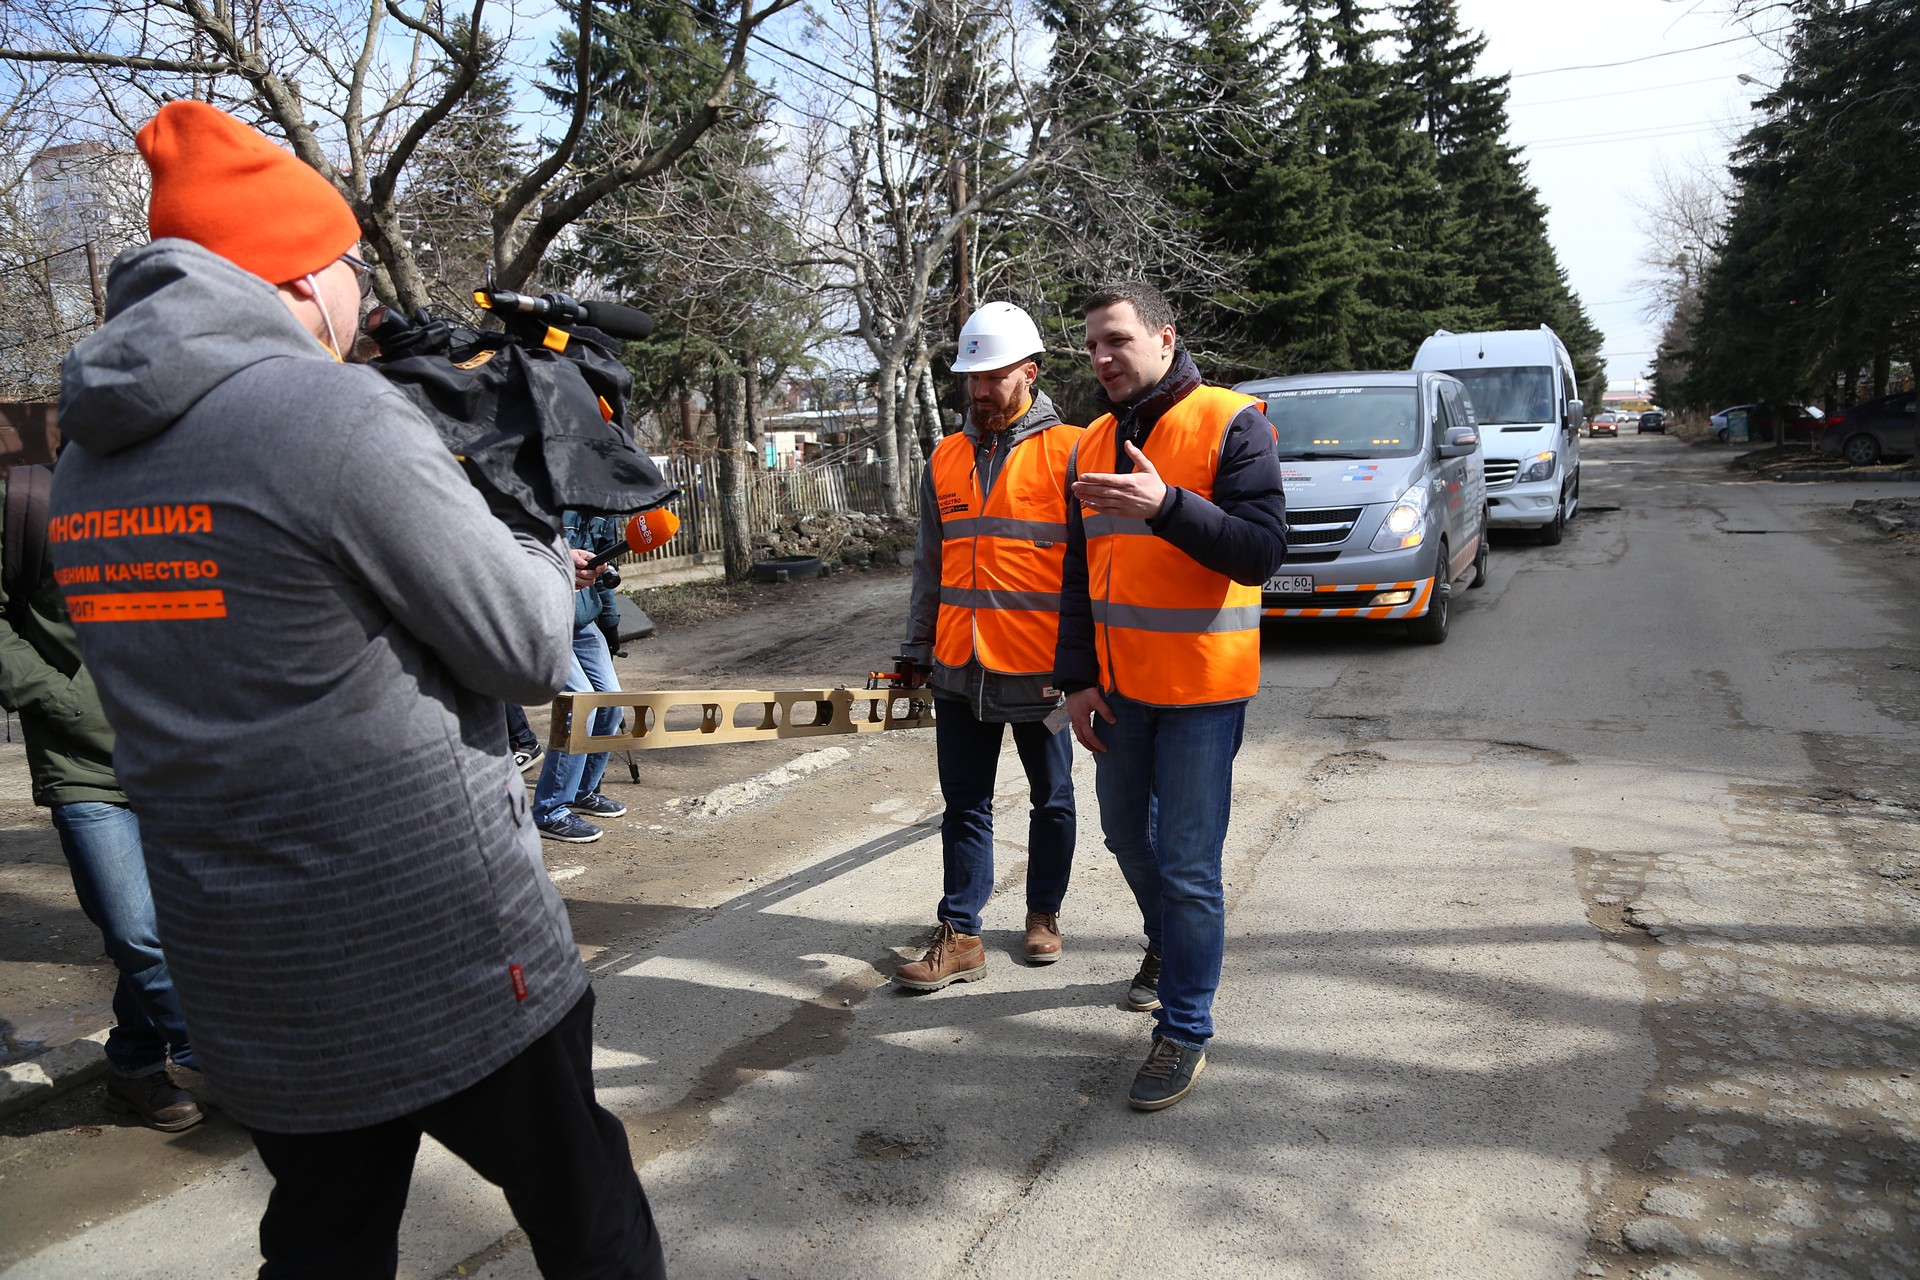 Ставрополь - один из немногих городов, где следят за состоянием дорог